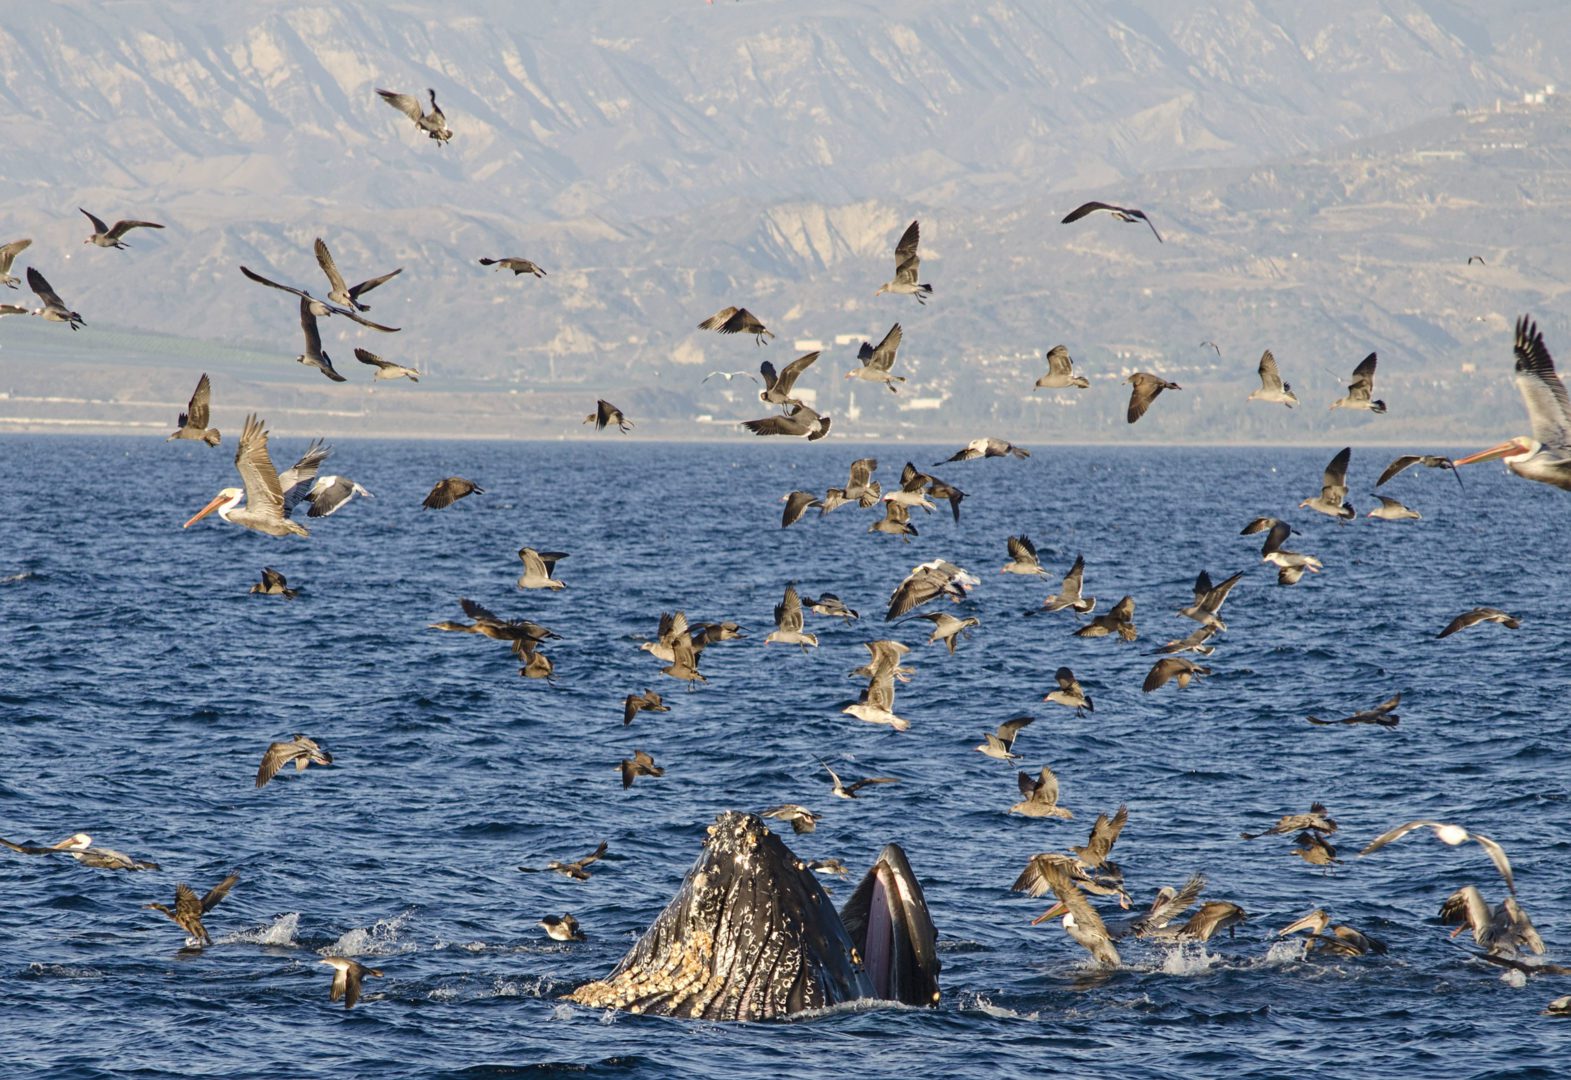 Photo of Humpback Whale Feeding in Santa Barbara Channel